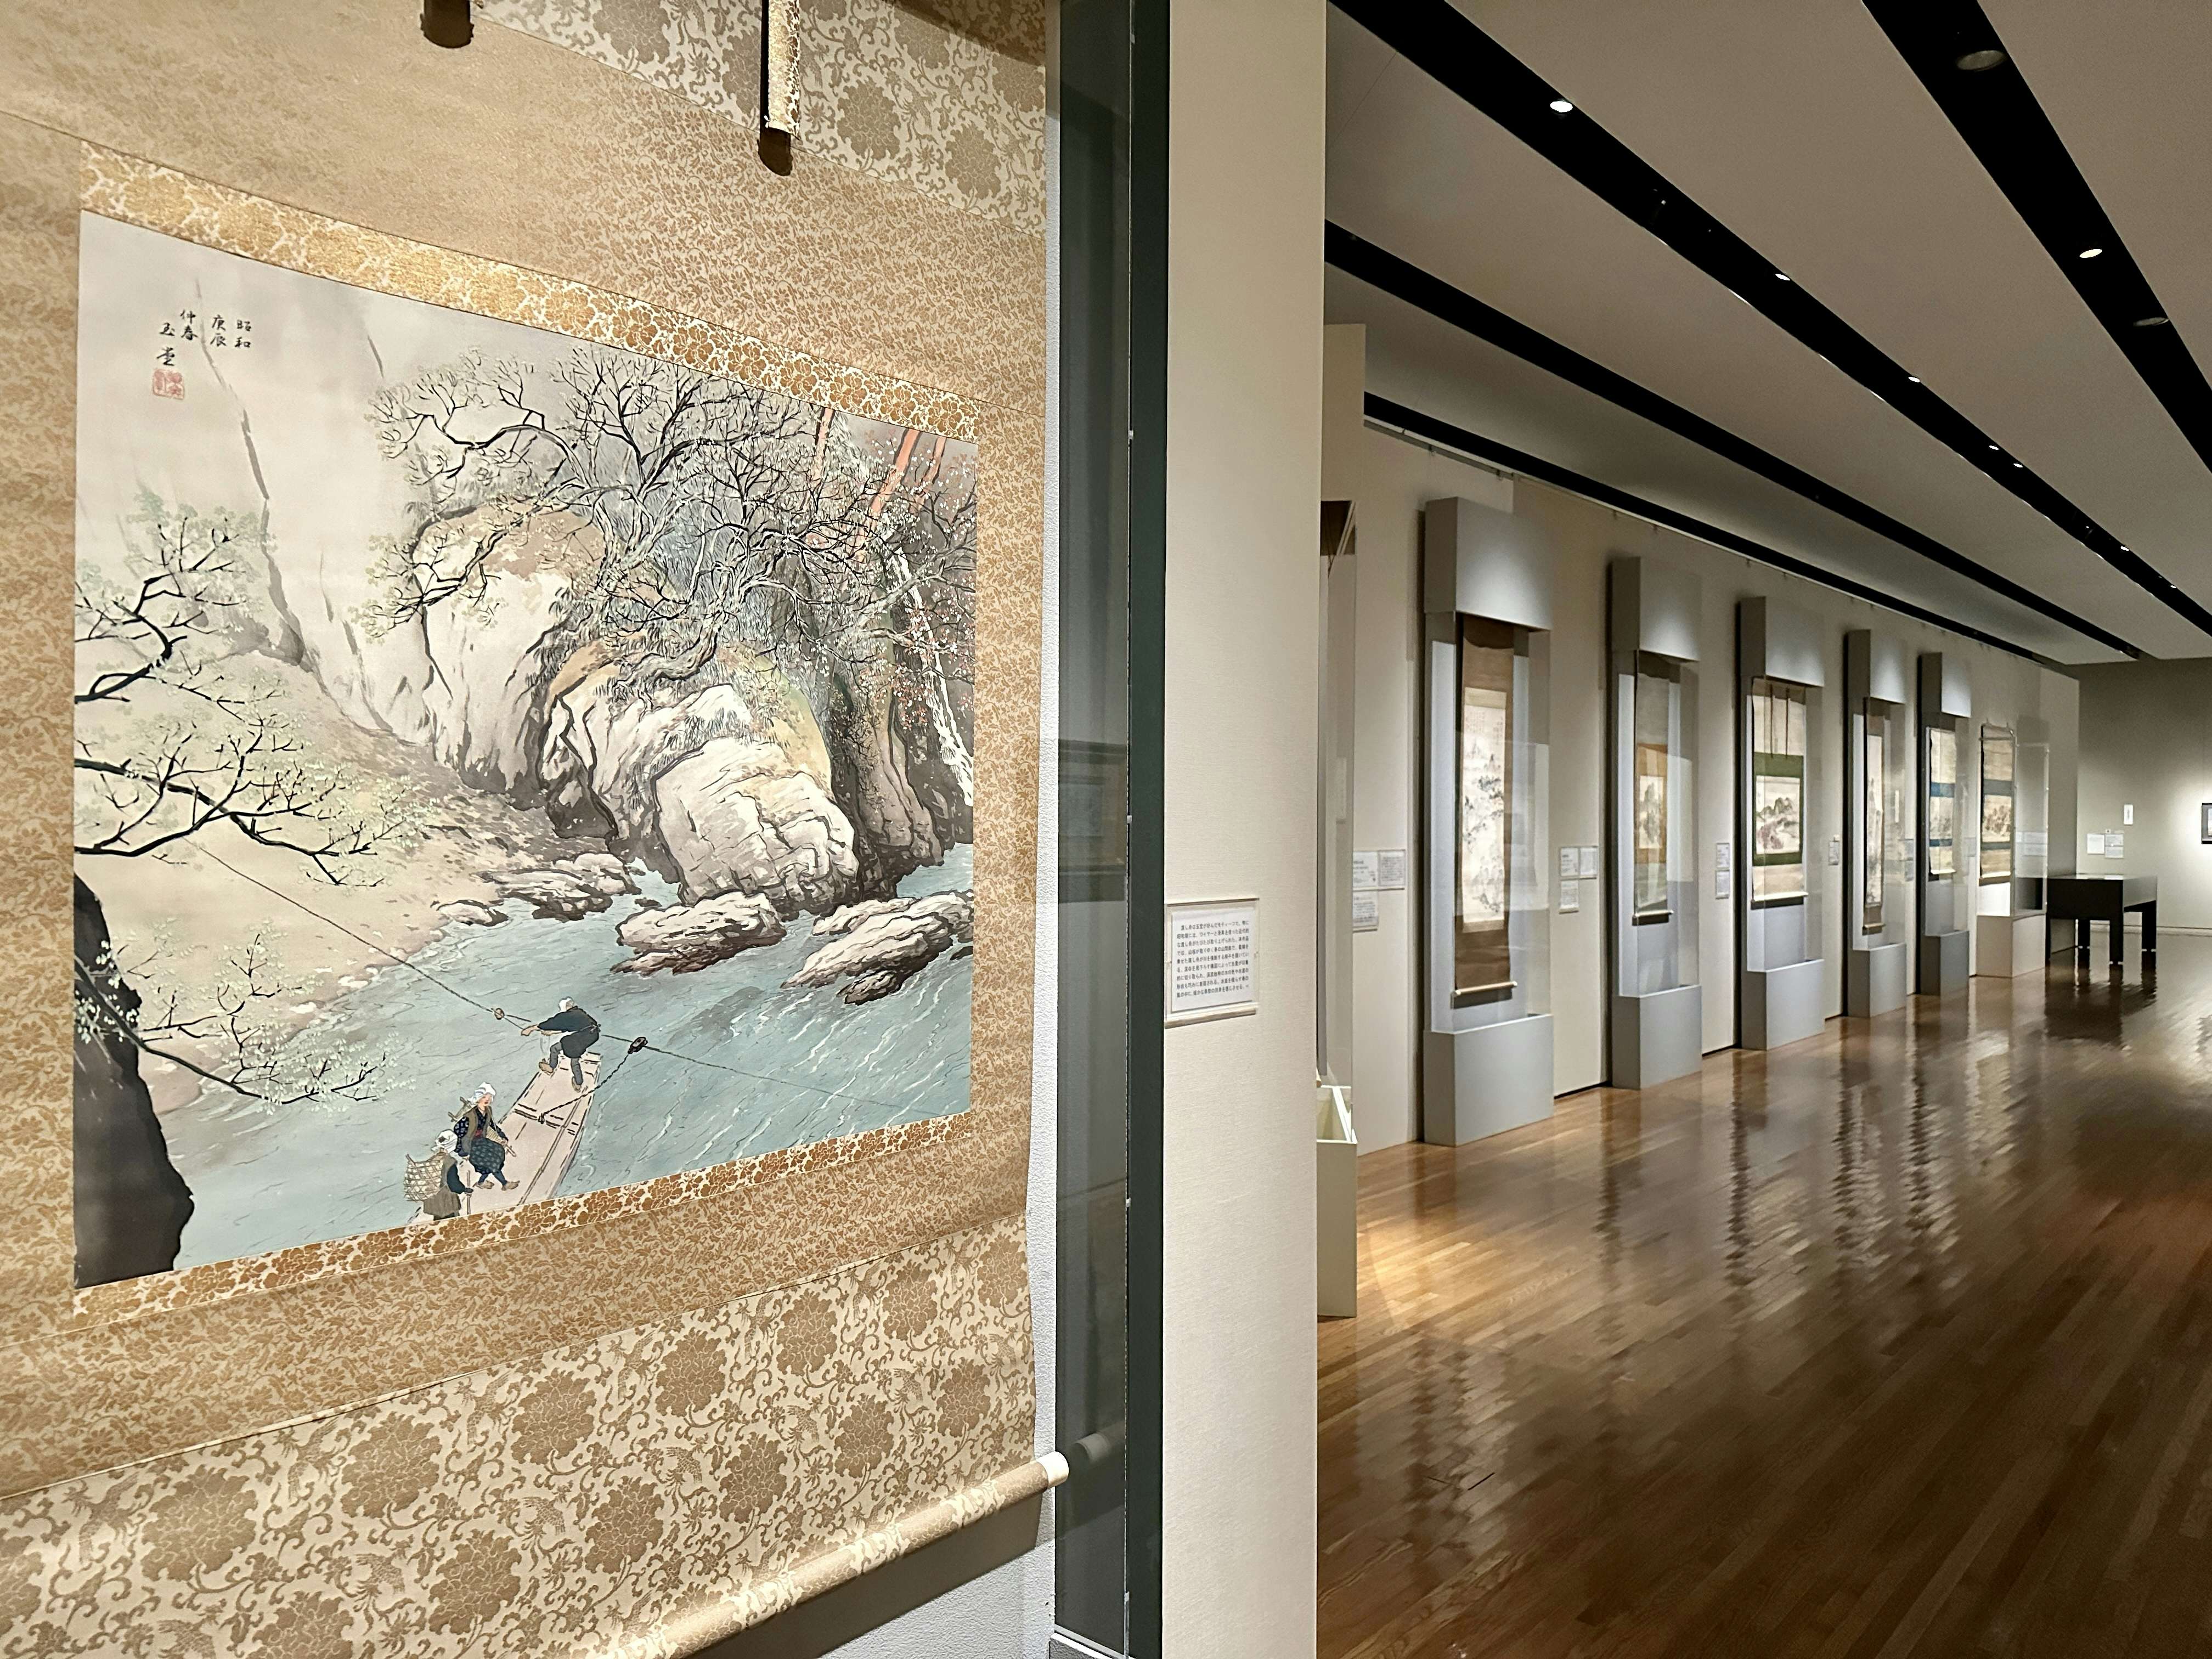 日本の風景」はいかに描かれてきたのか。山種美術館で見るその変遷